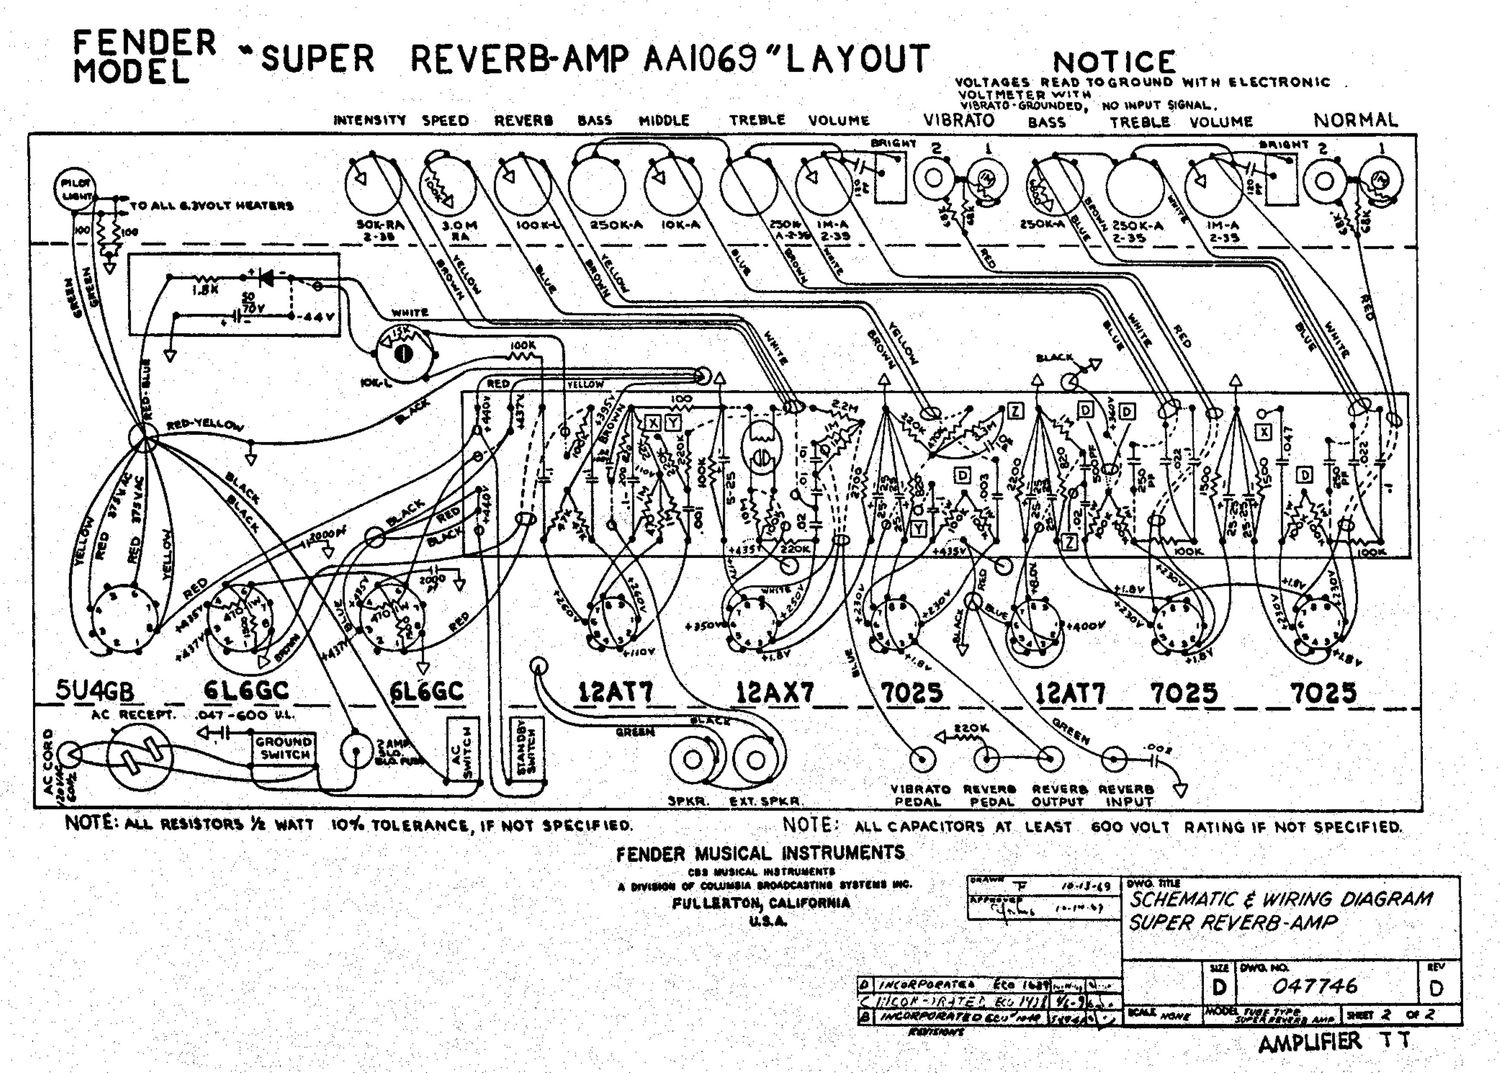 fender super reverb aa1069 layout schematic